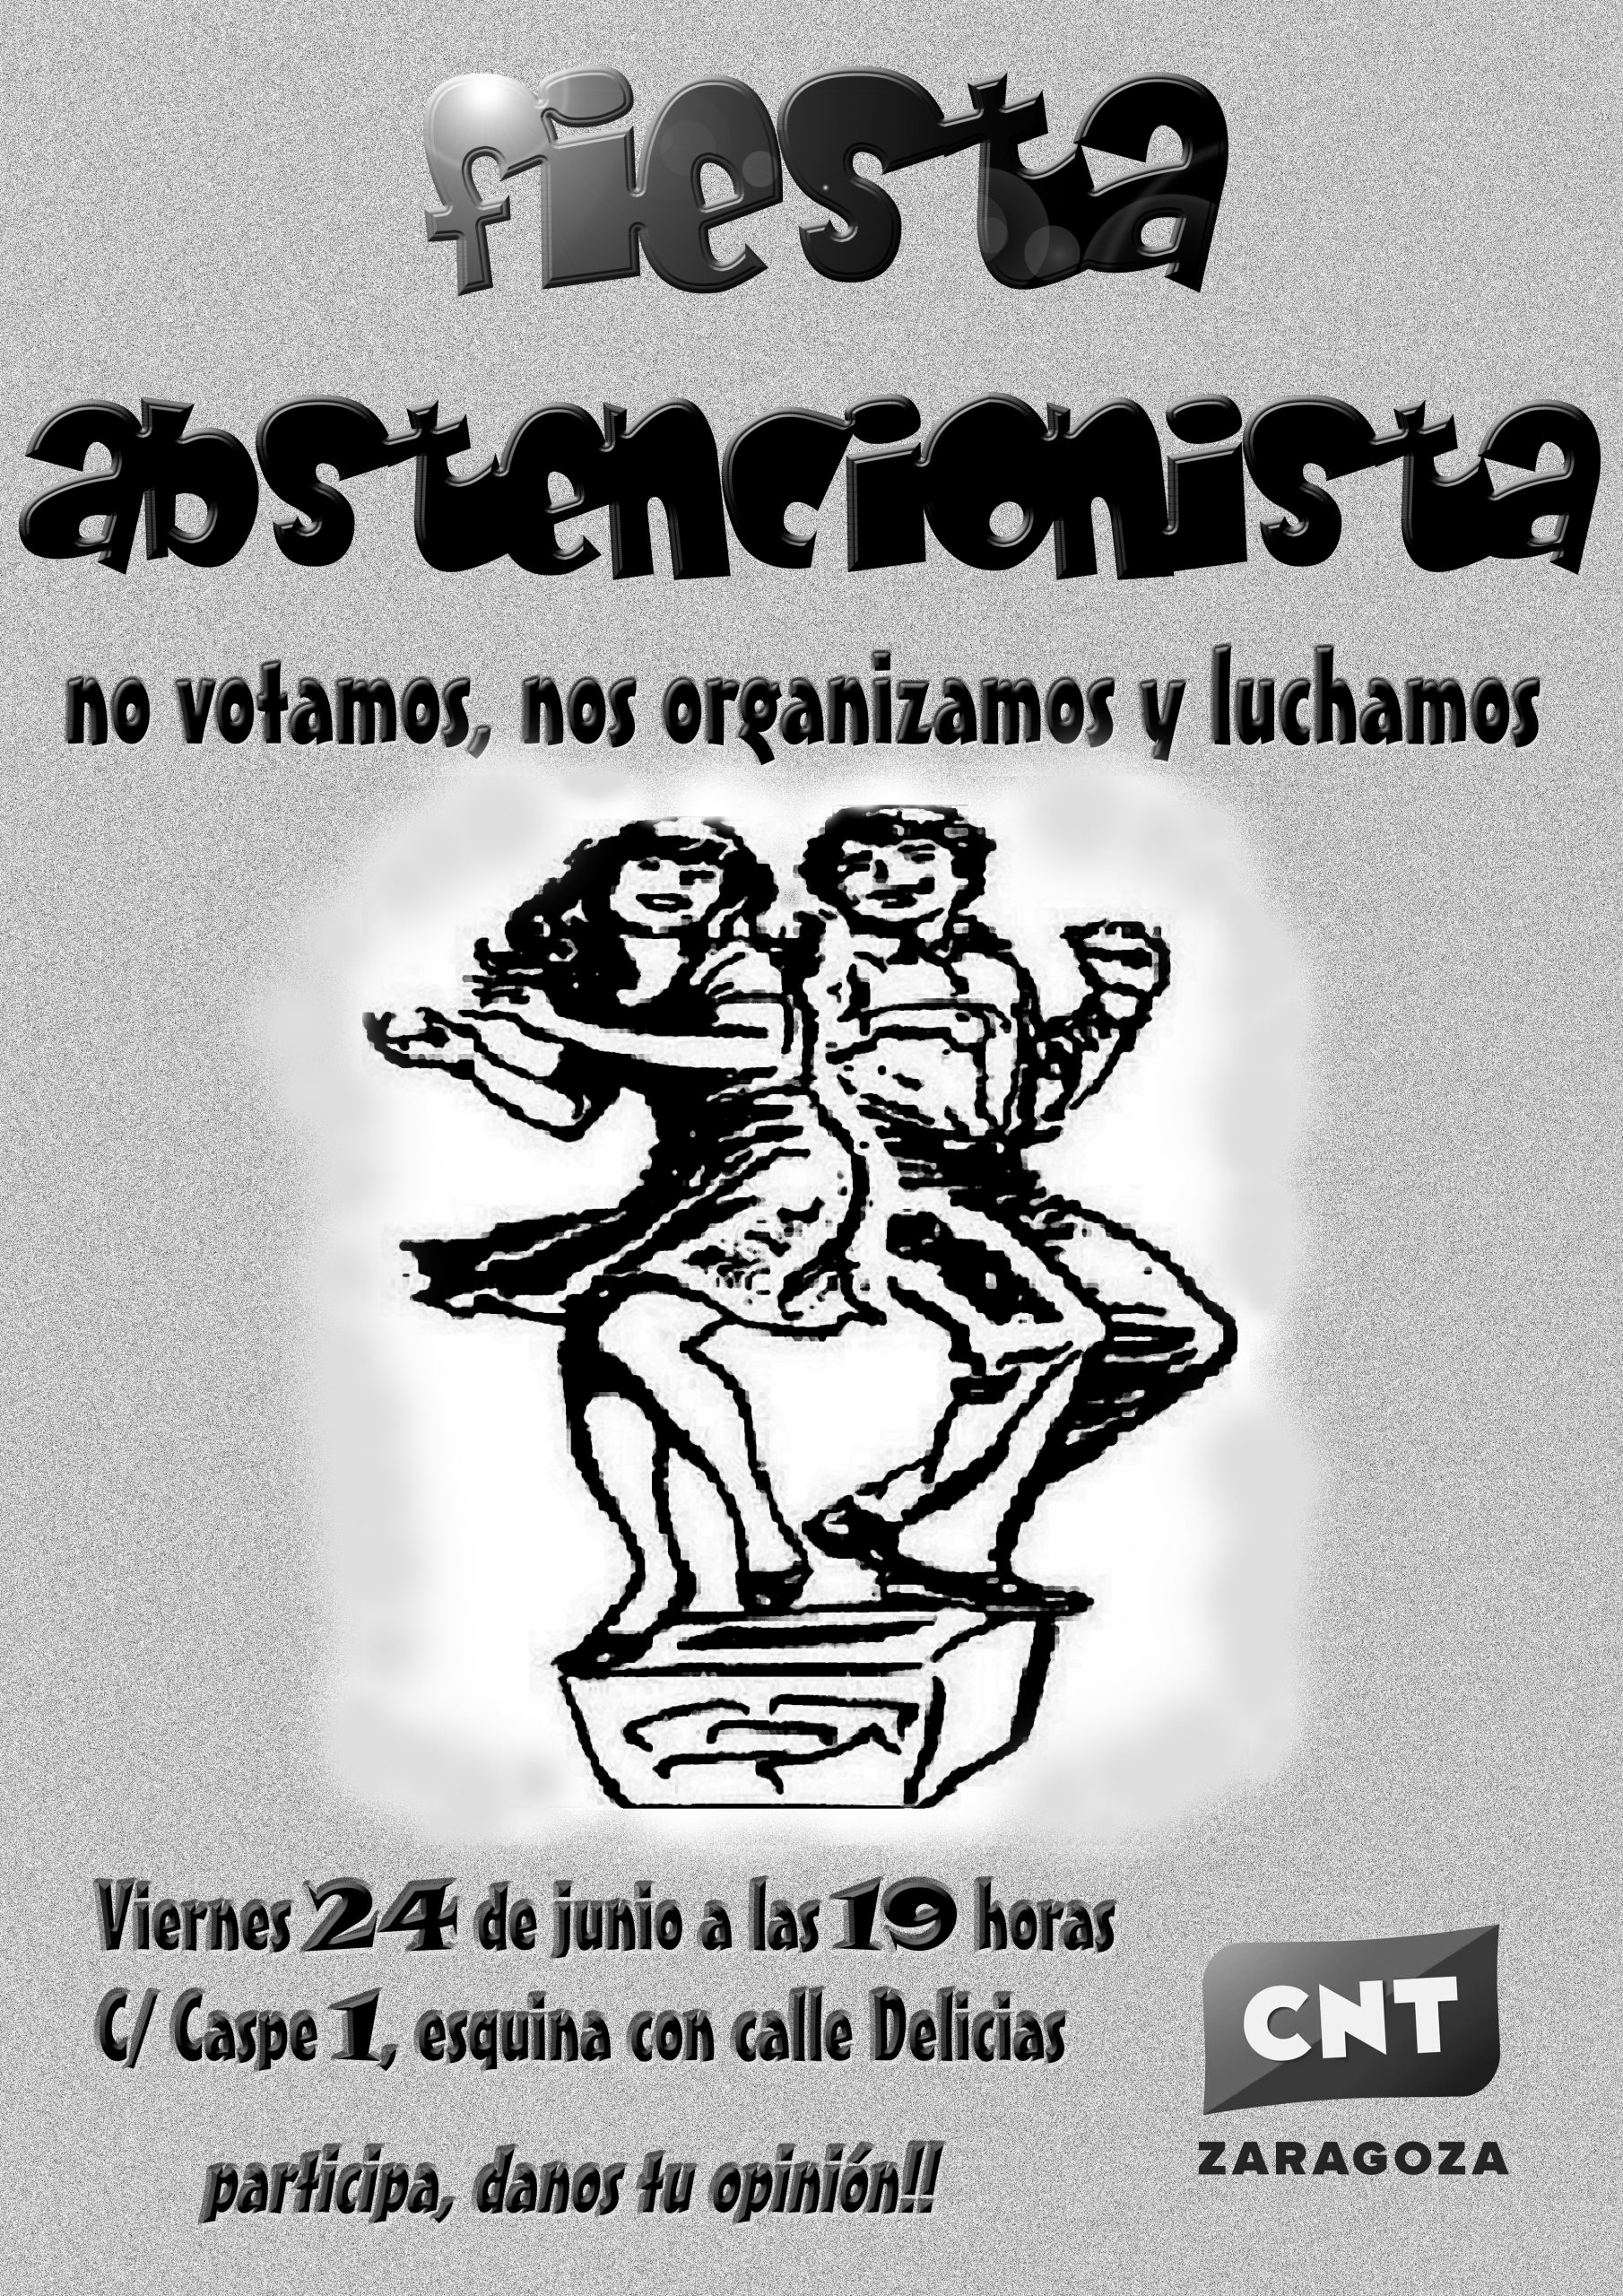 [CNT-Zaragoza] Fiesta abstencionista viernes 24/6 a las 20 horas